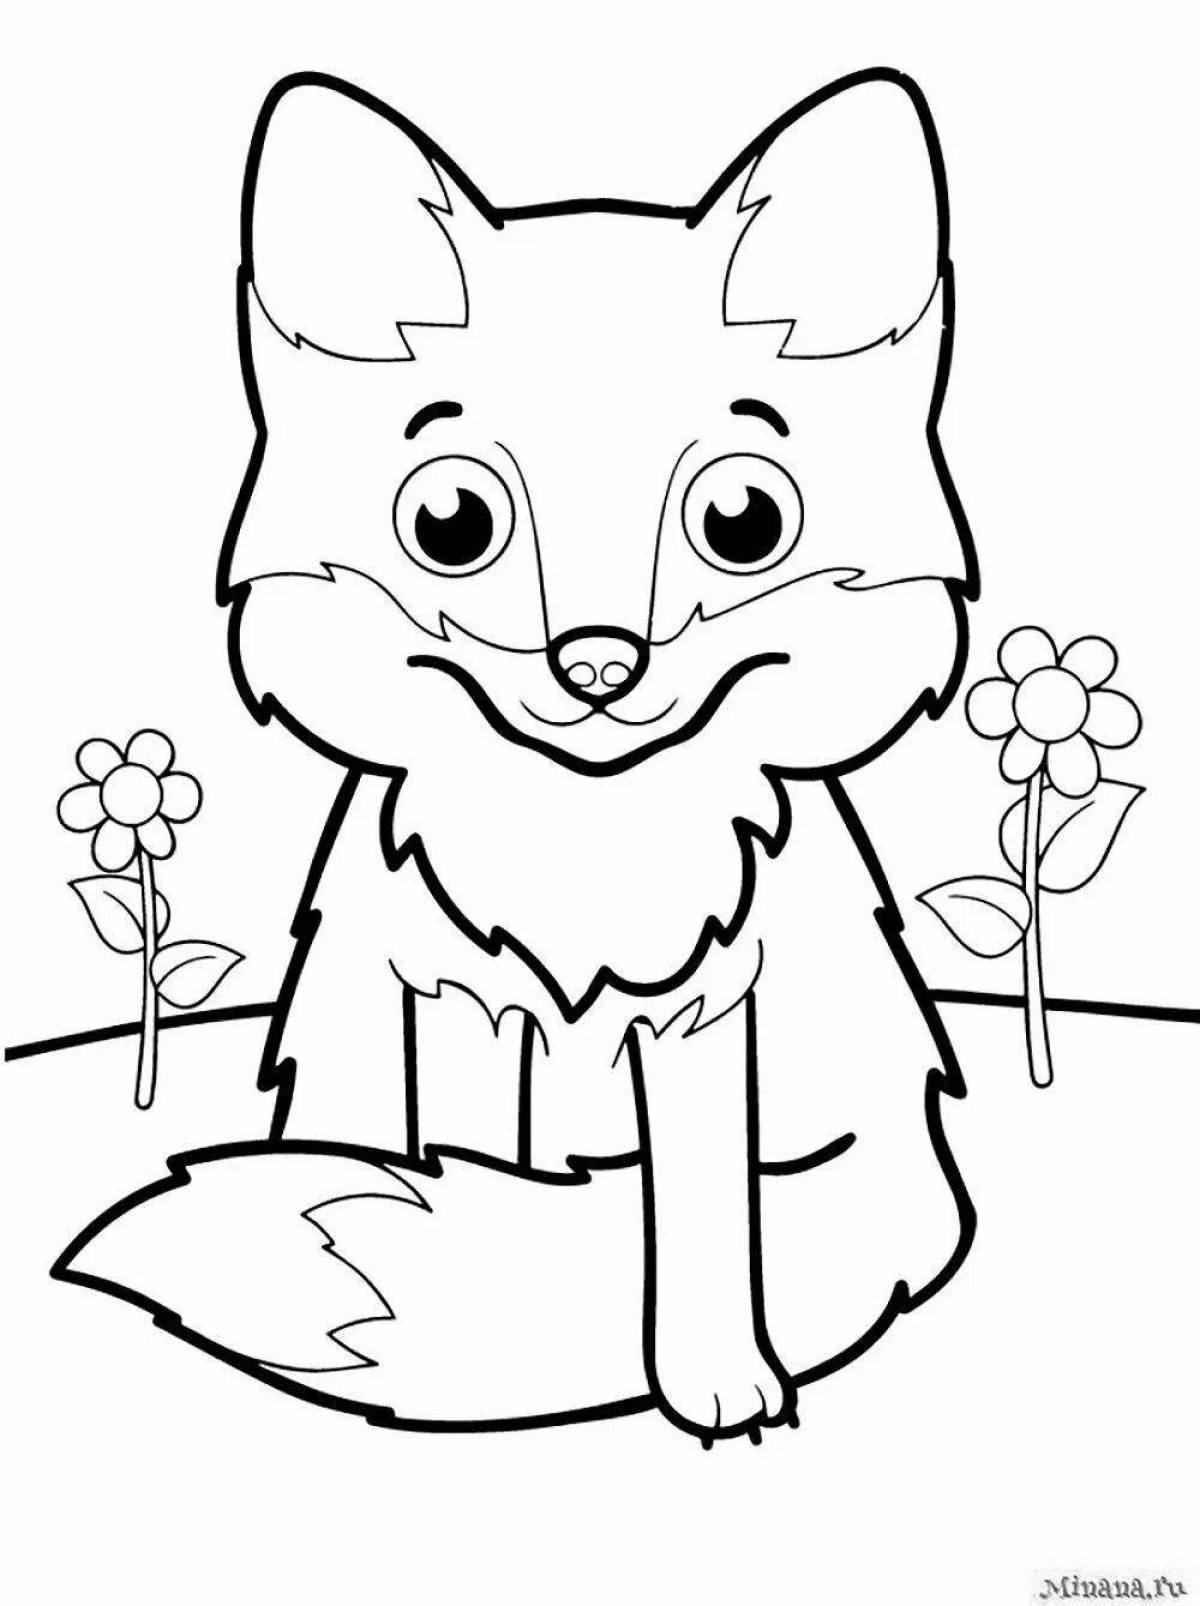 Сладкий рисунок лисы для детей